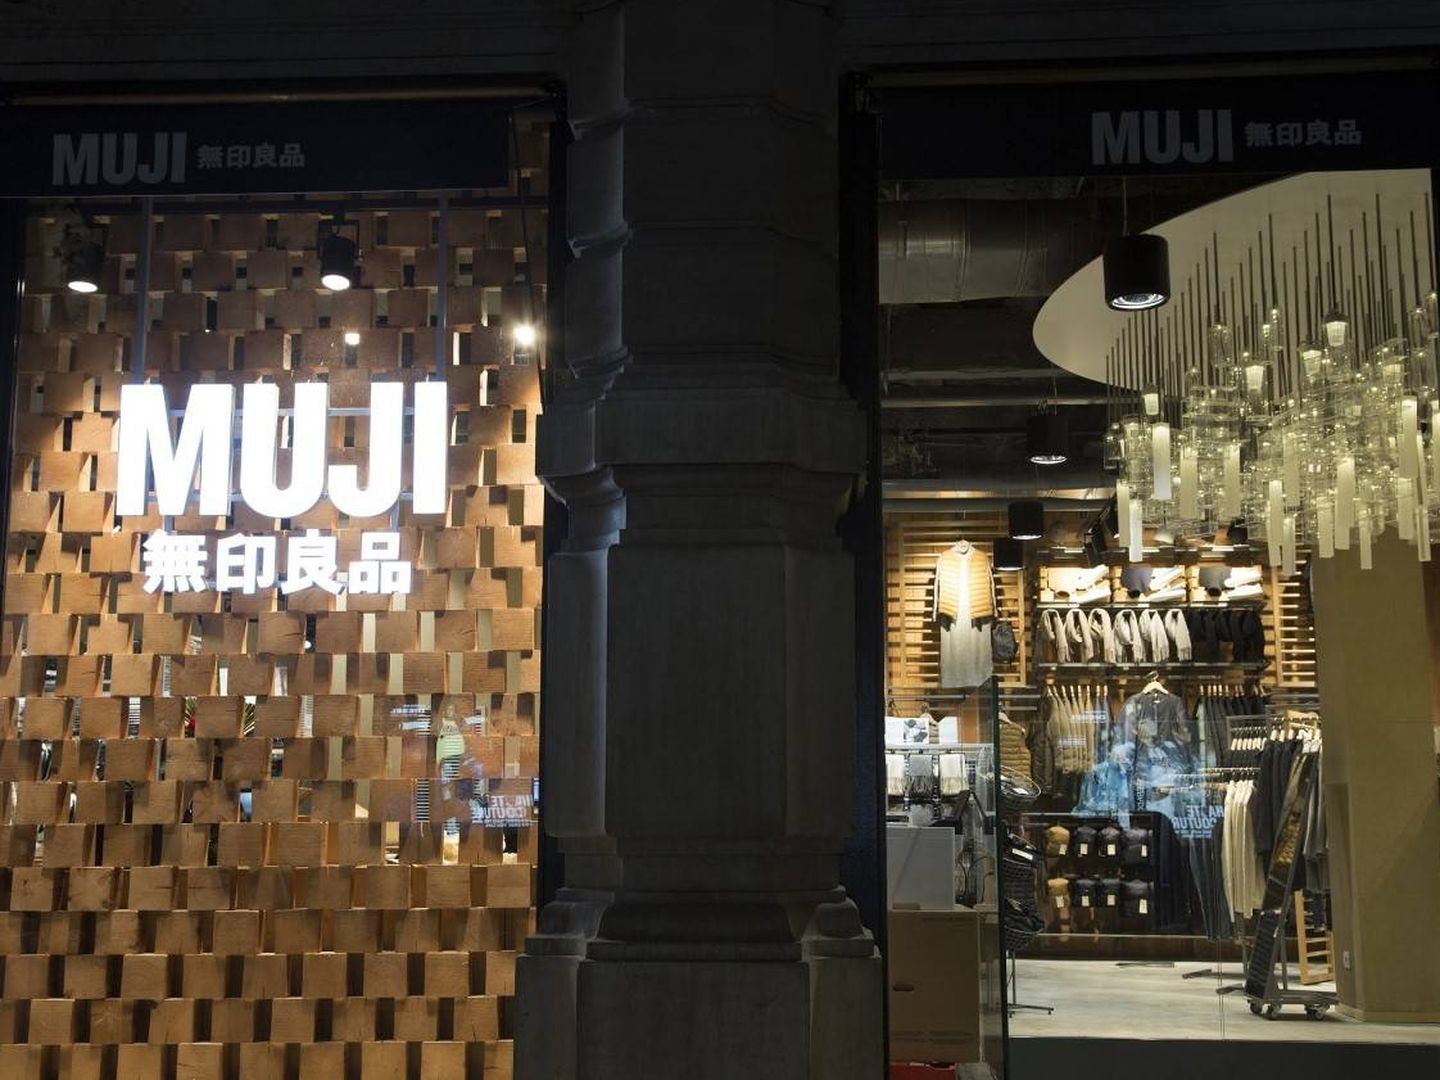 La tienda de Muji más grande de Europa está en Barcelona. (Cortesía)